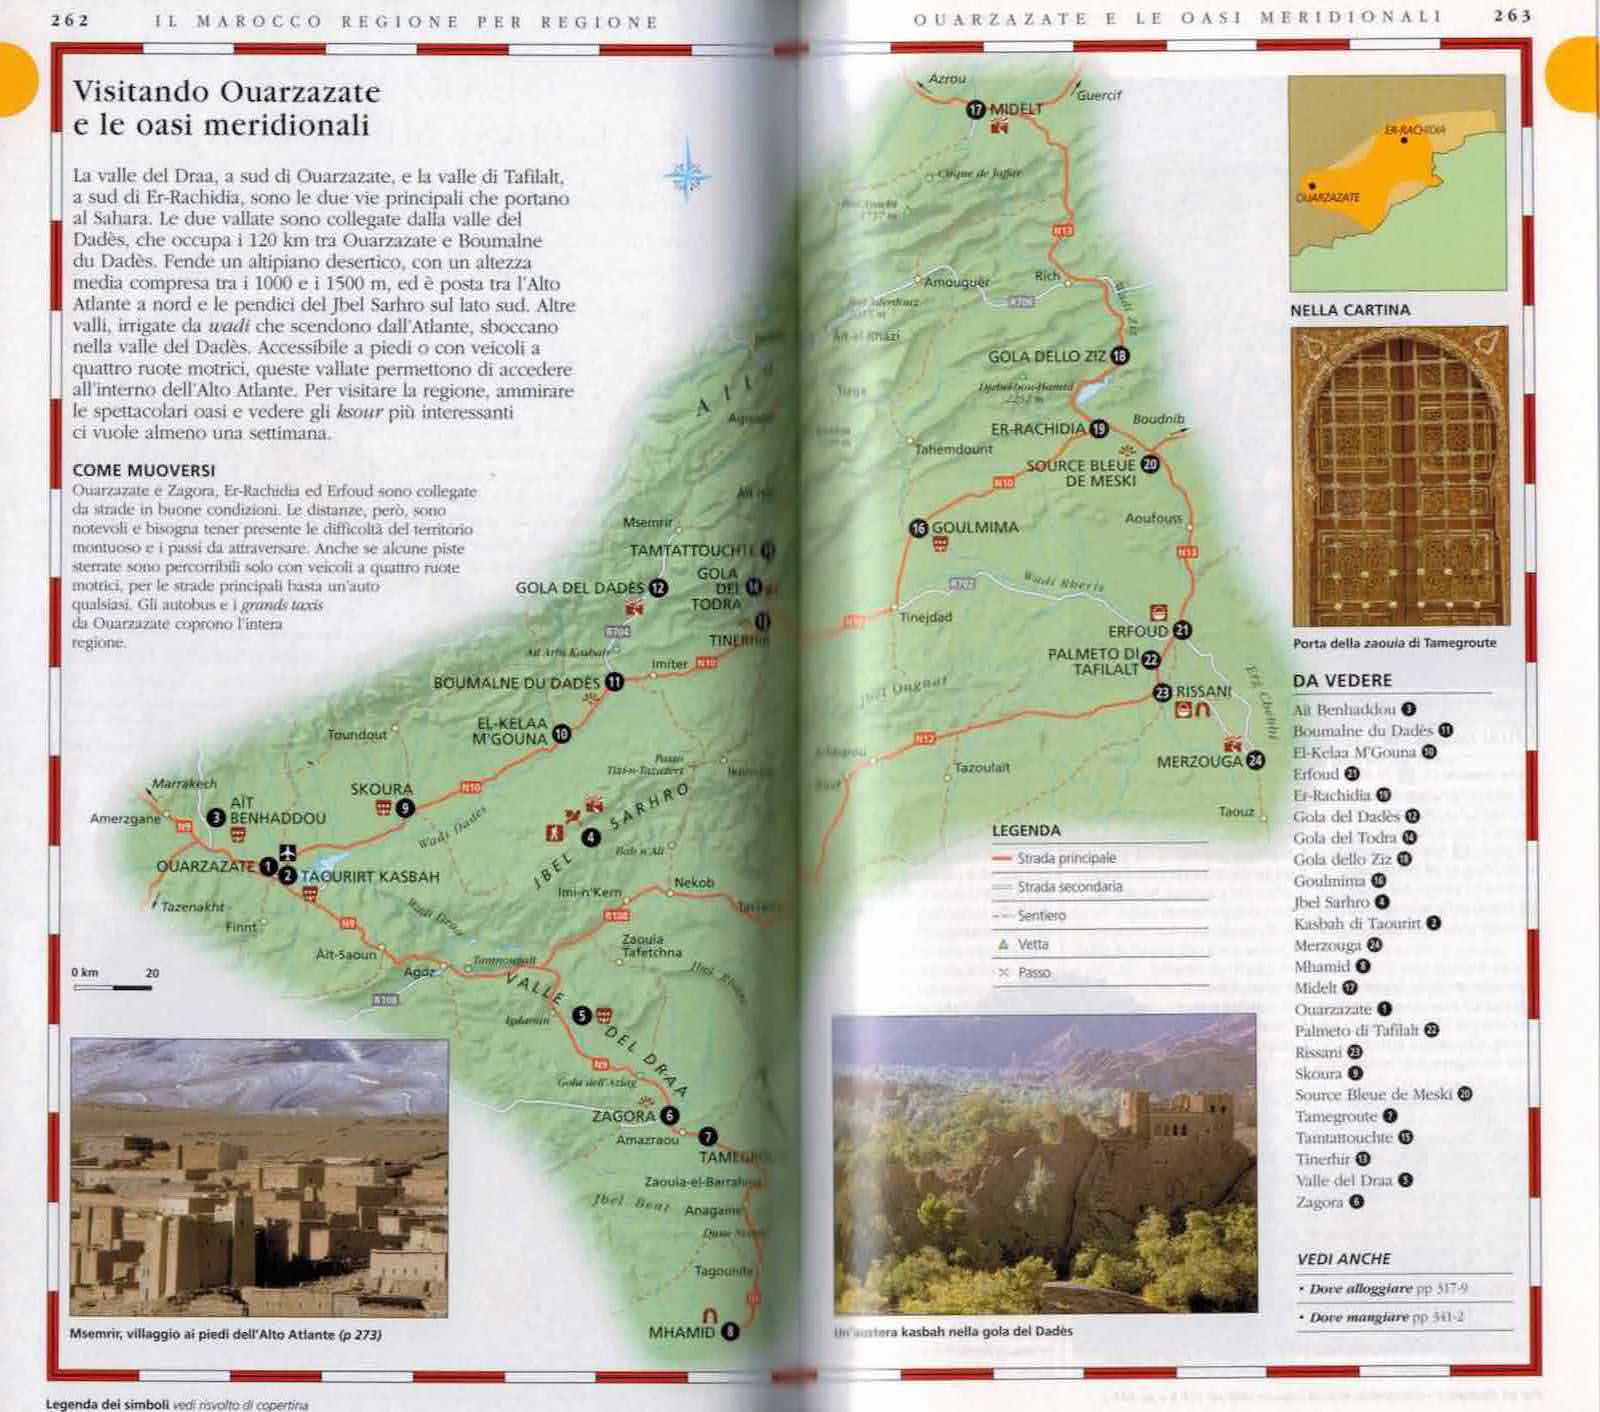 Guida Marocco Mondadori dettaglio itinerari